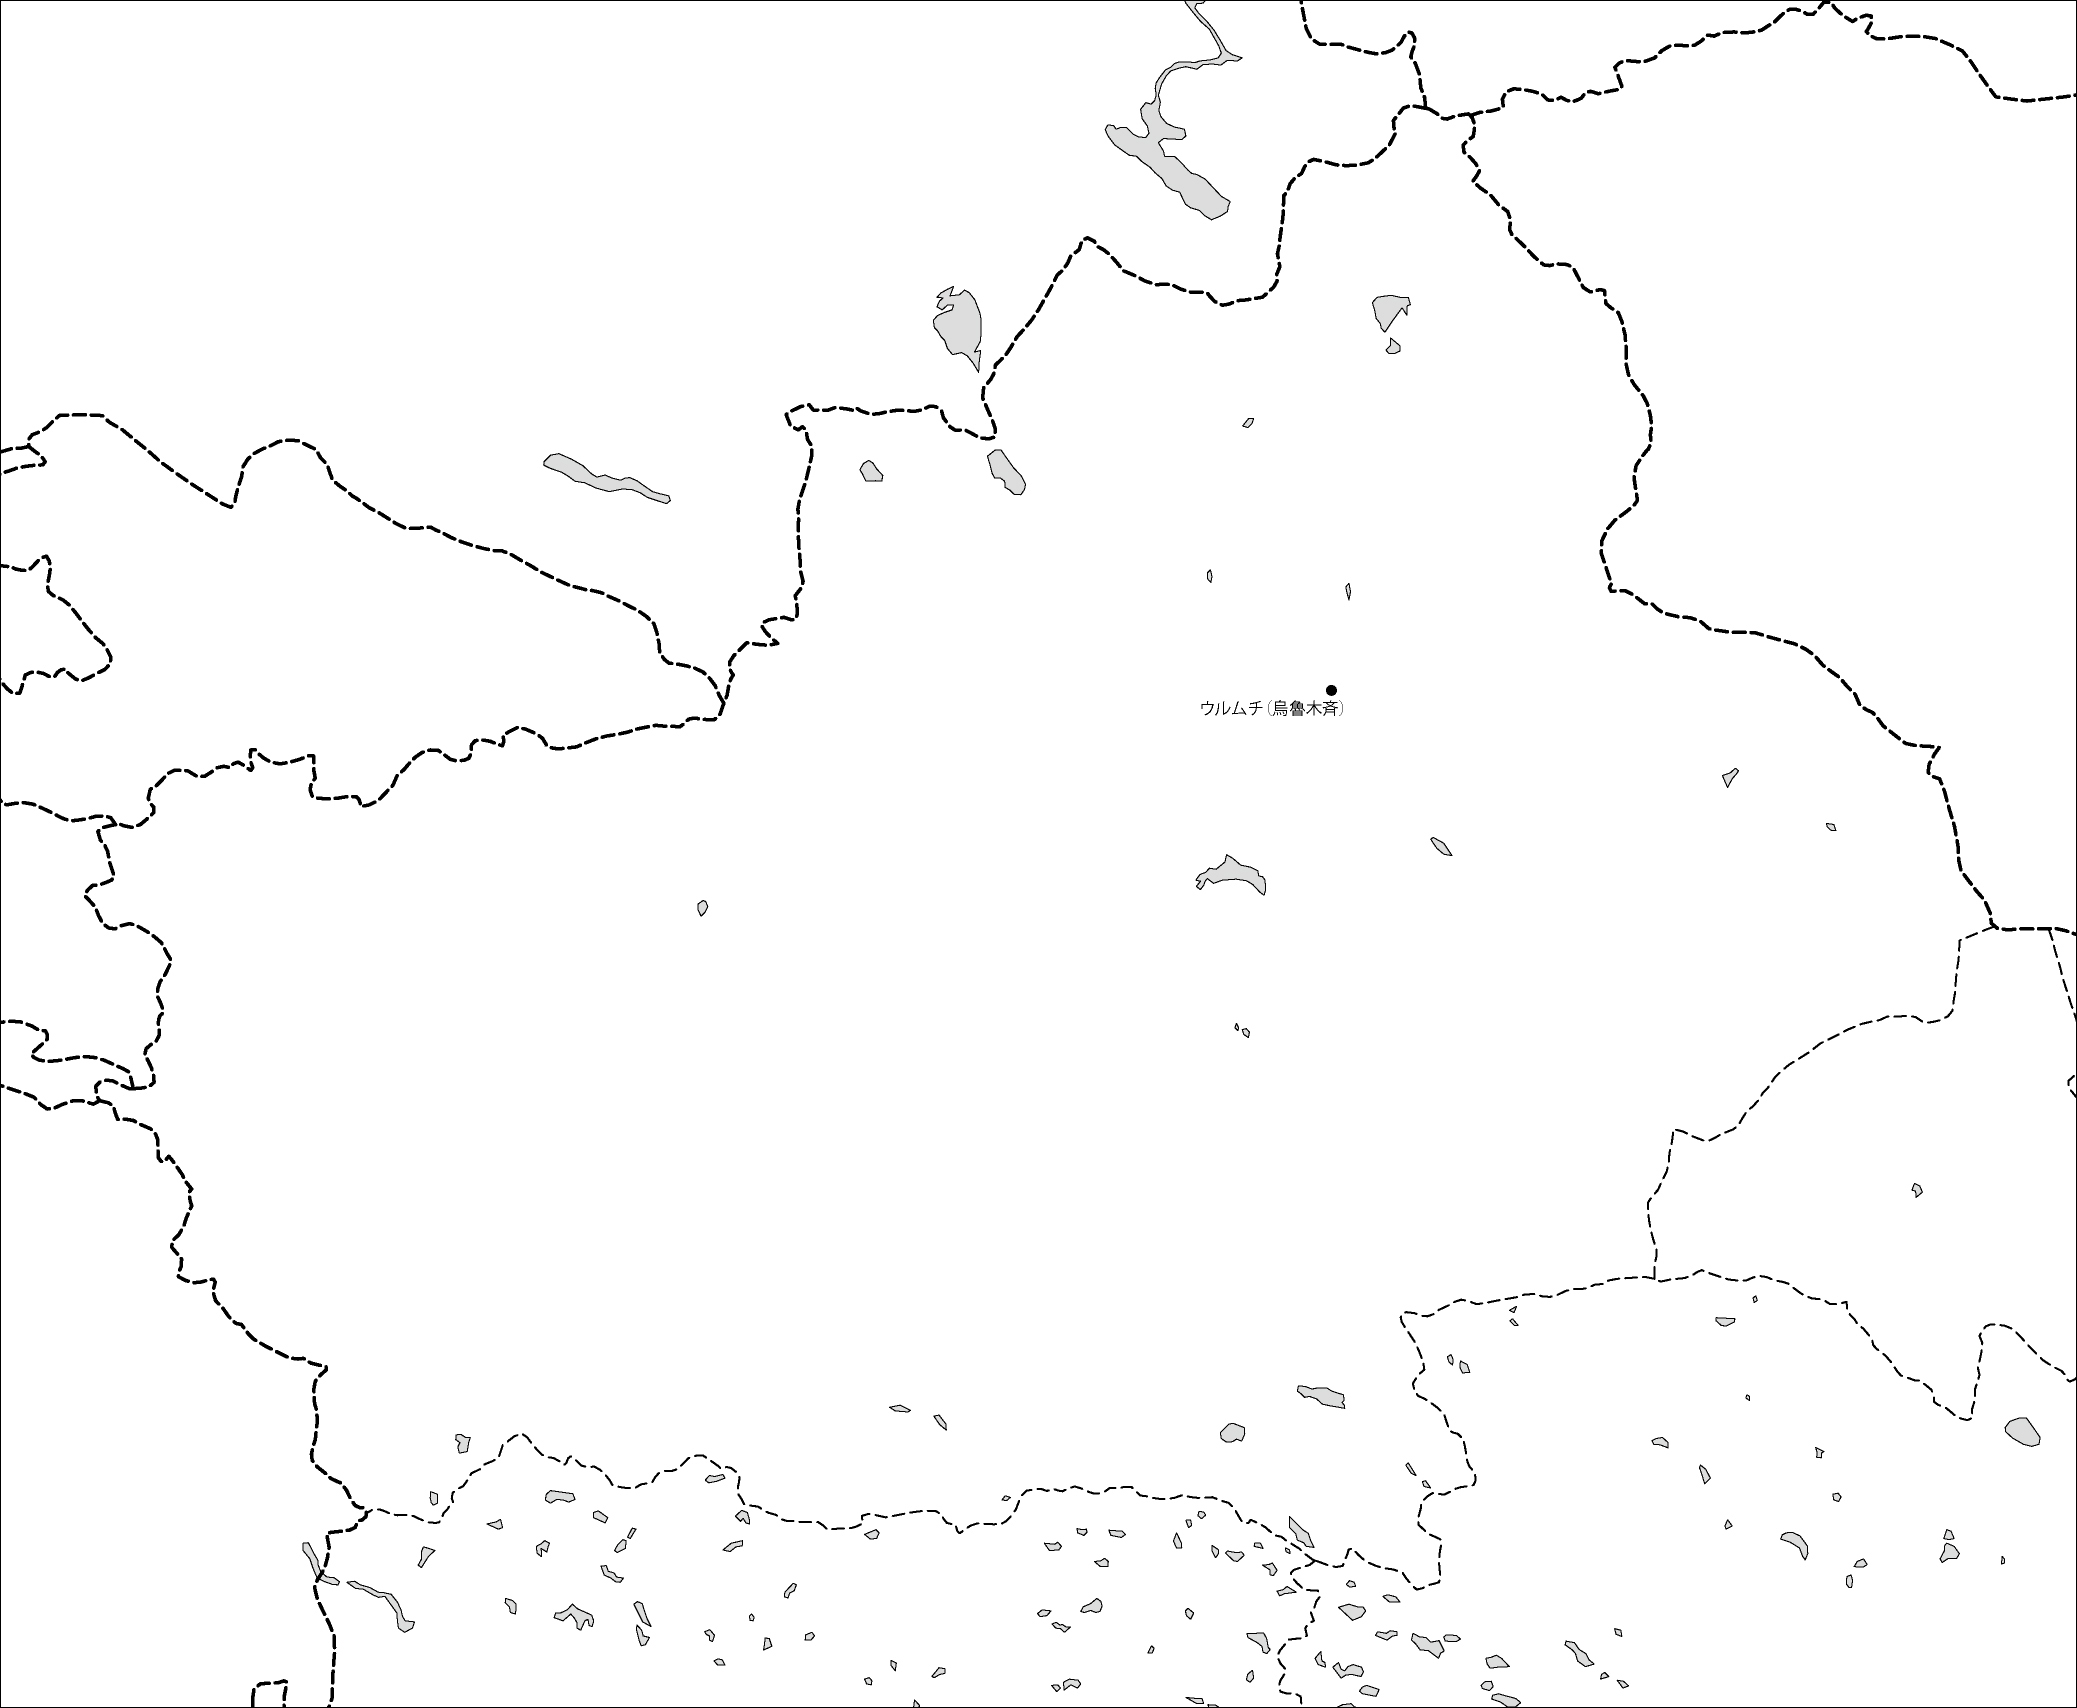 新疆ウイグル自治区白地図(省都あり)のフリーデータの画像